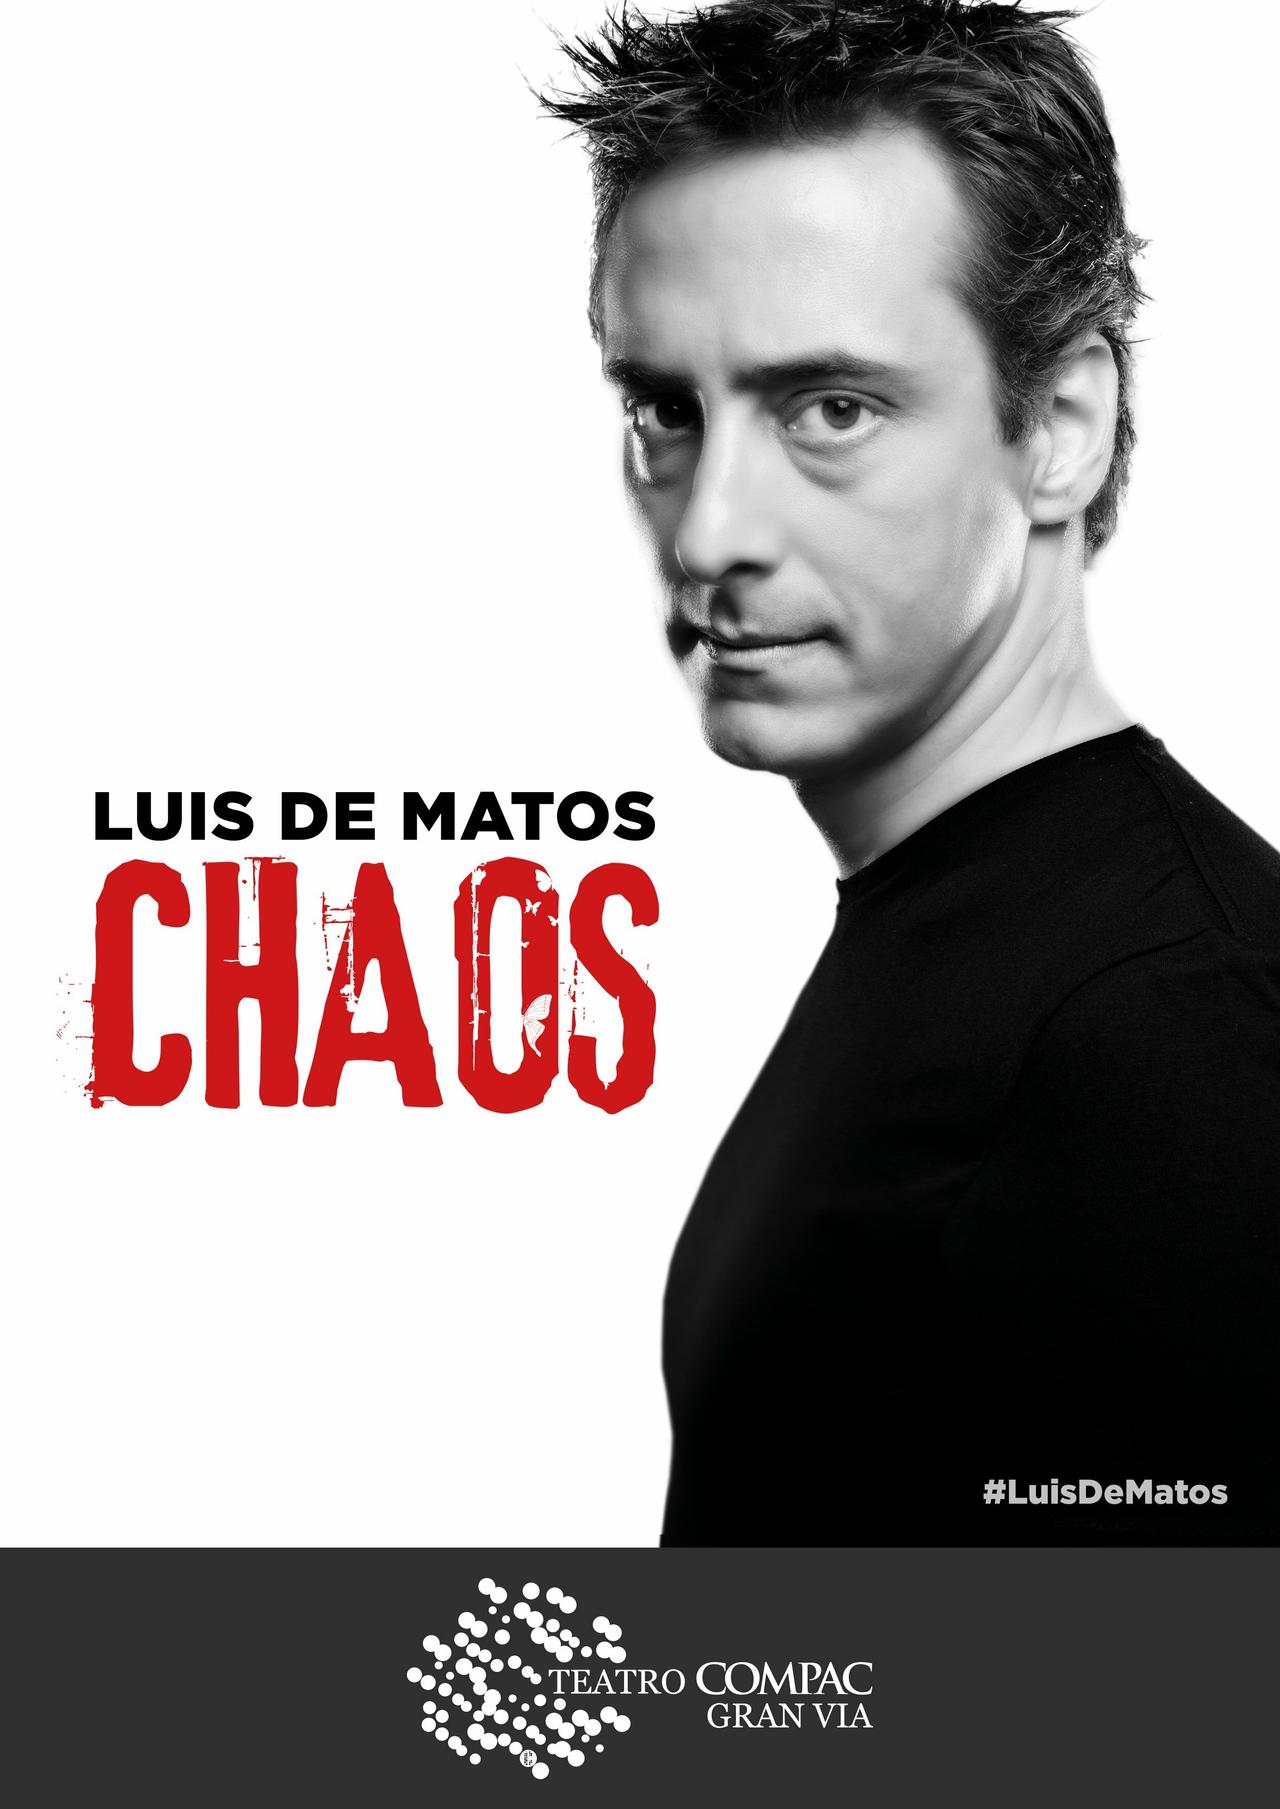 Luis de Matos Chaos